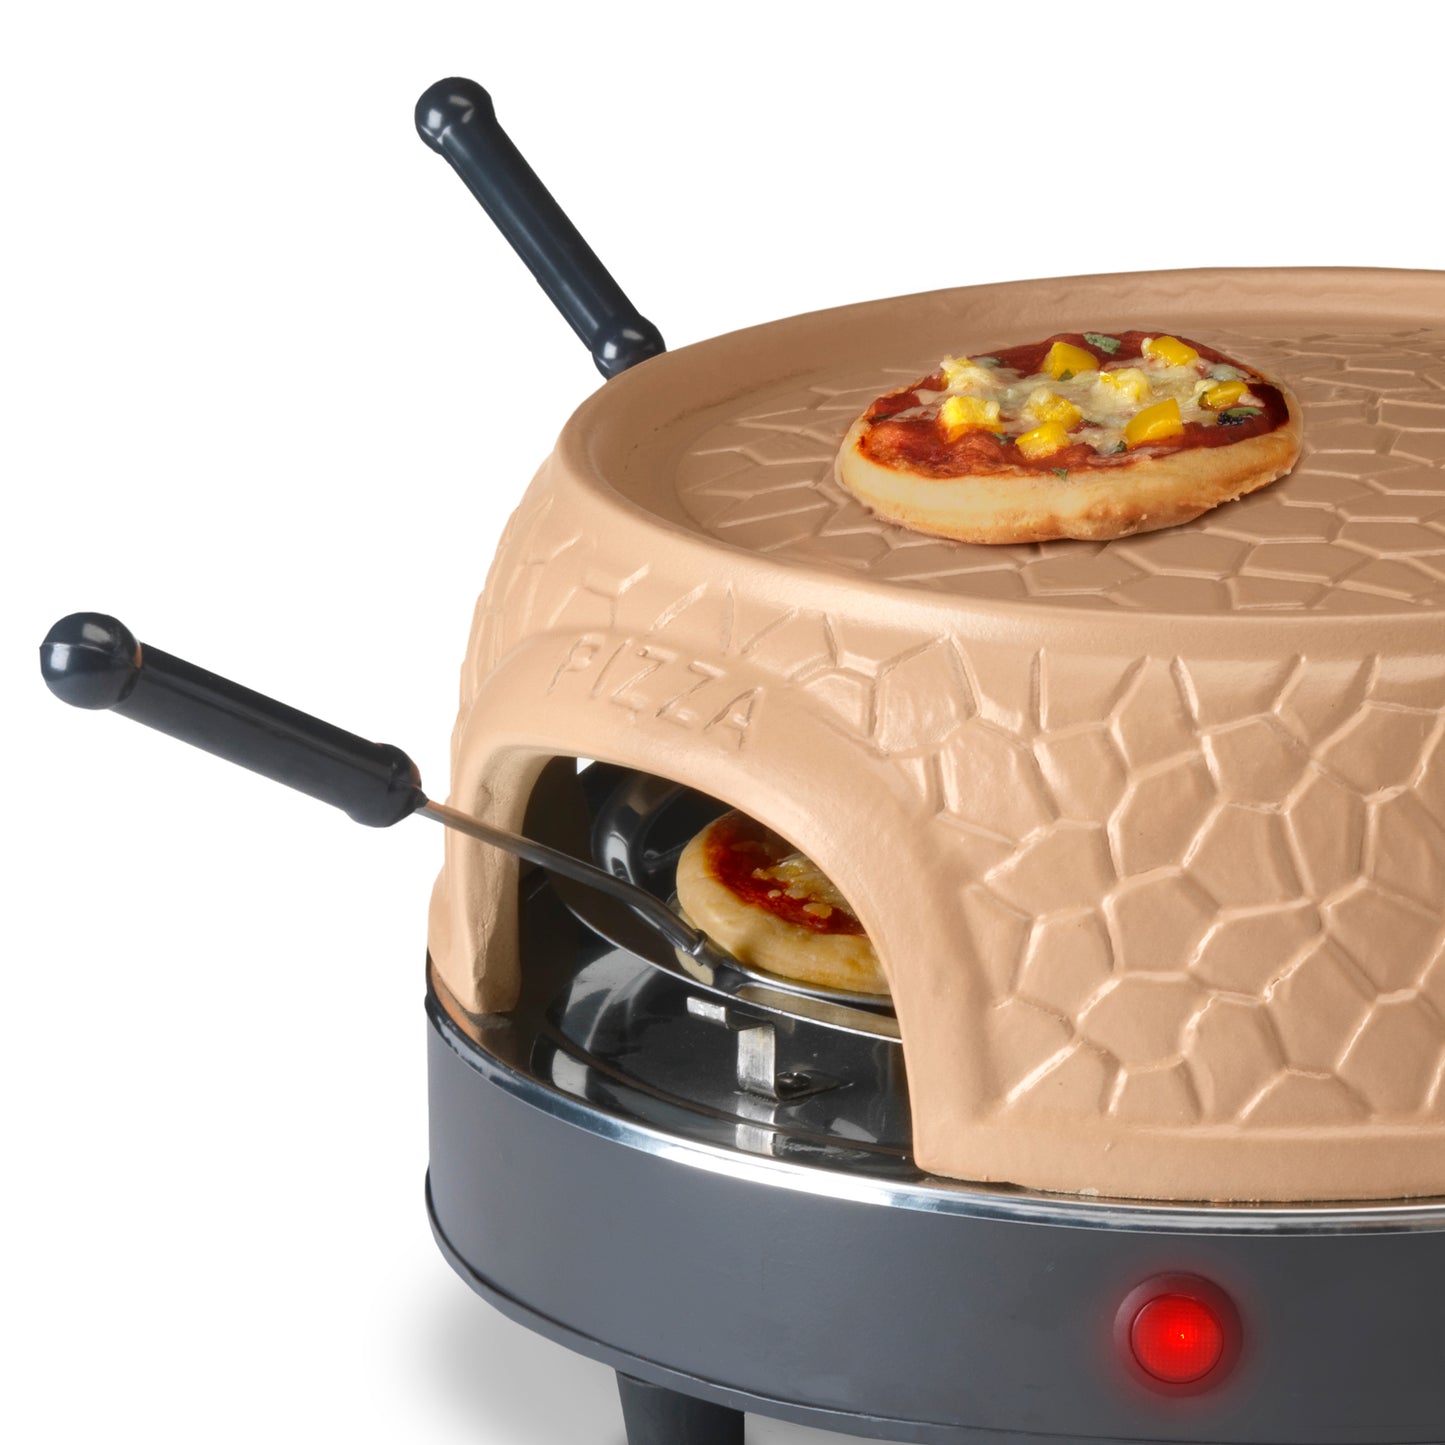 Gastronoma 18310016 - Pizza oven voor 4 personen - Inclusief bakspatels, bakplaat en pizzavorm - Keramiek/Grijs